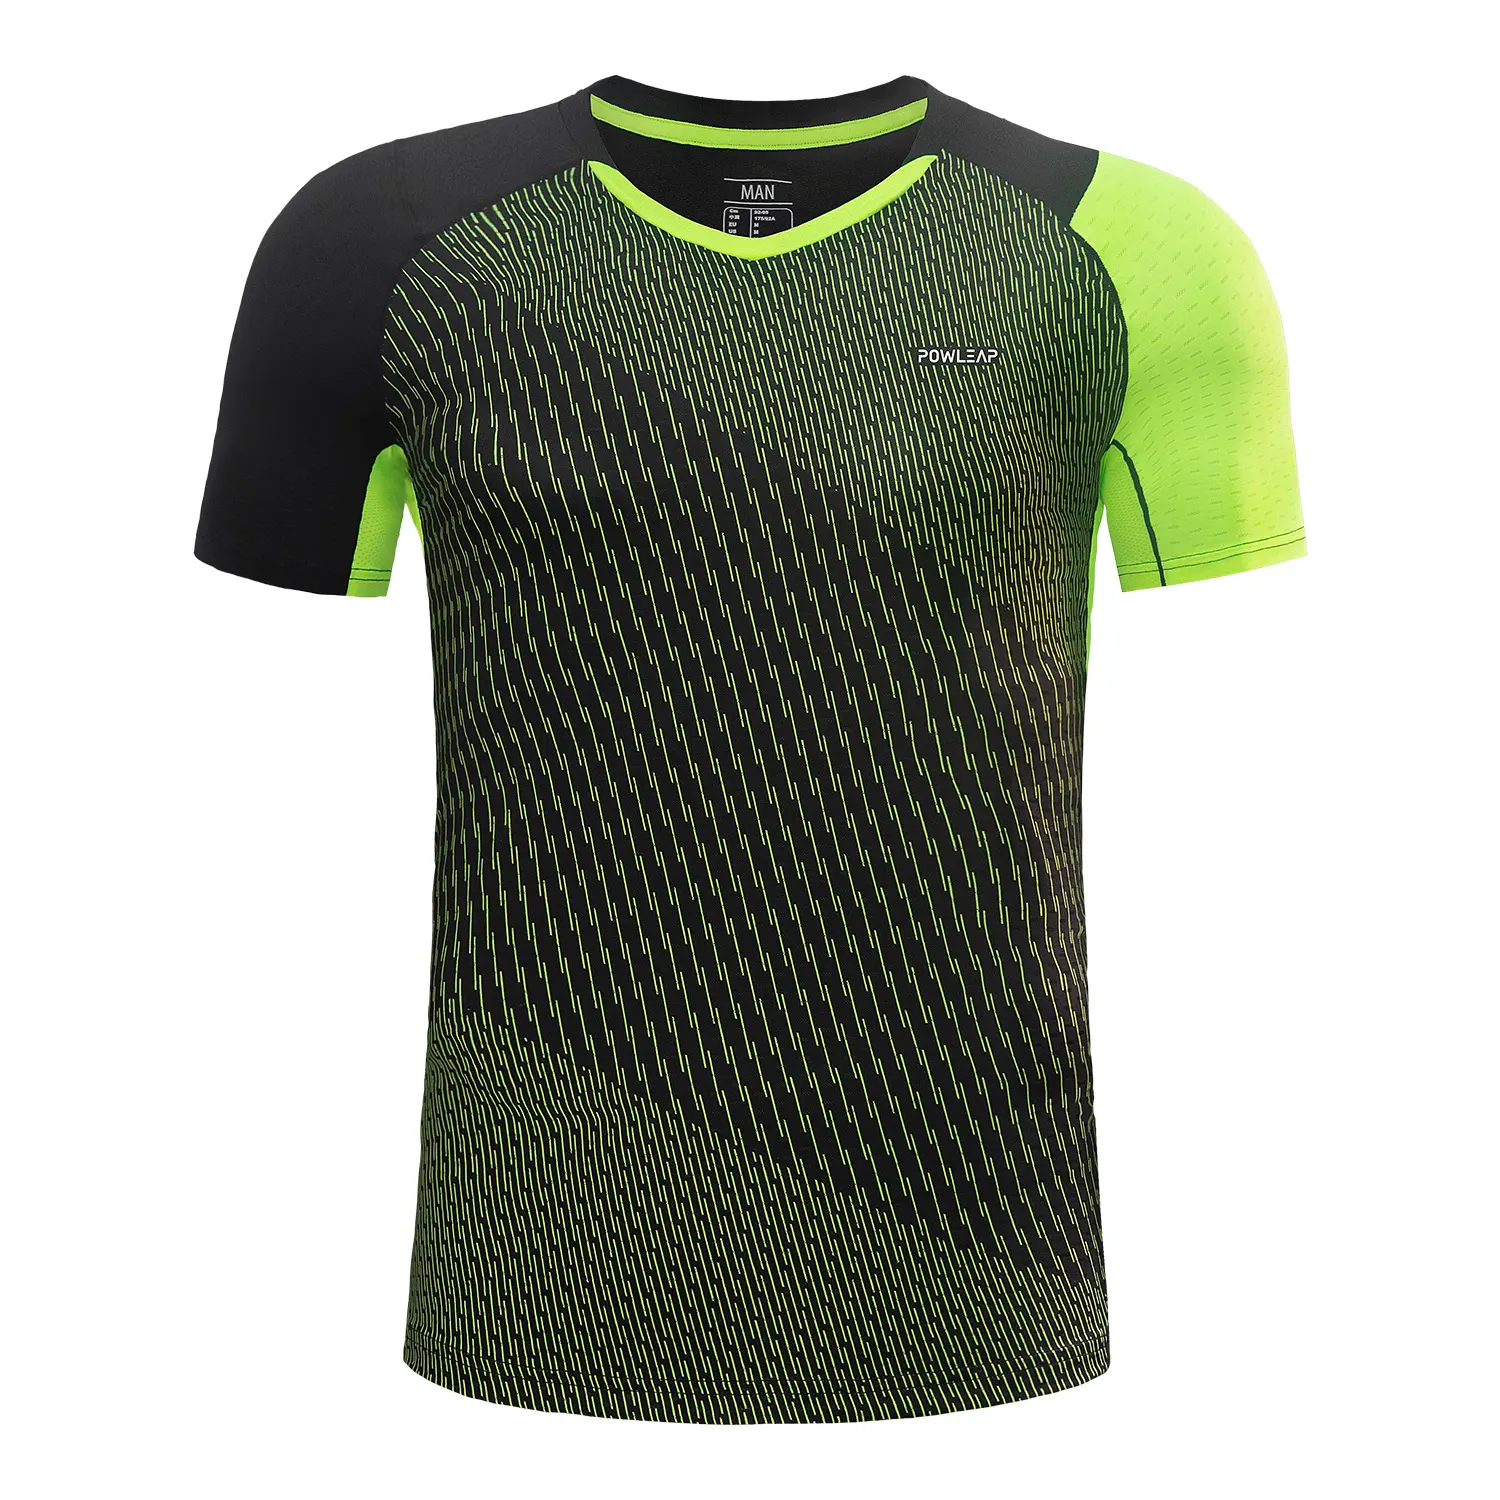 Комплект теннисной униформы с сублимационной печатью, футболки для собственной команды и бадминтона на заказ, шорты, юбки, мужская женская детская футболка для волейбола